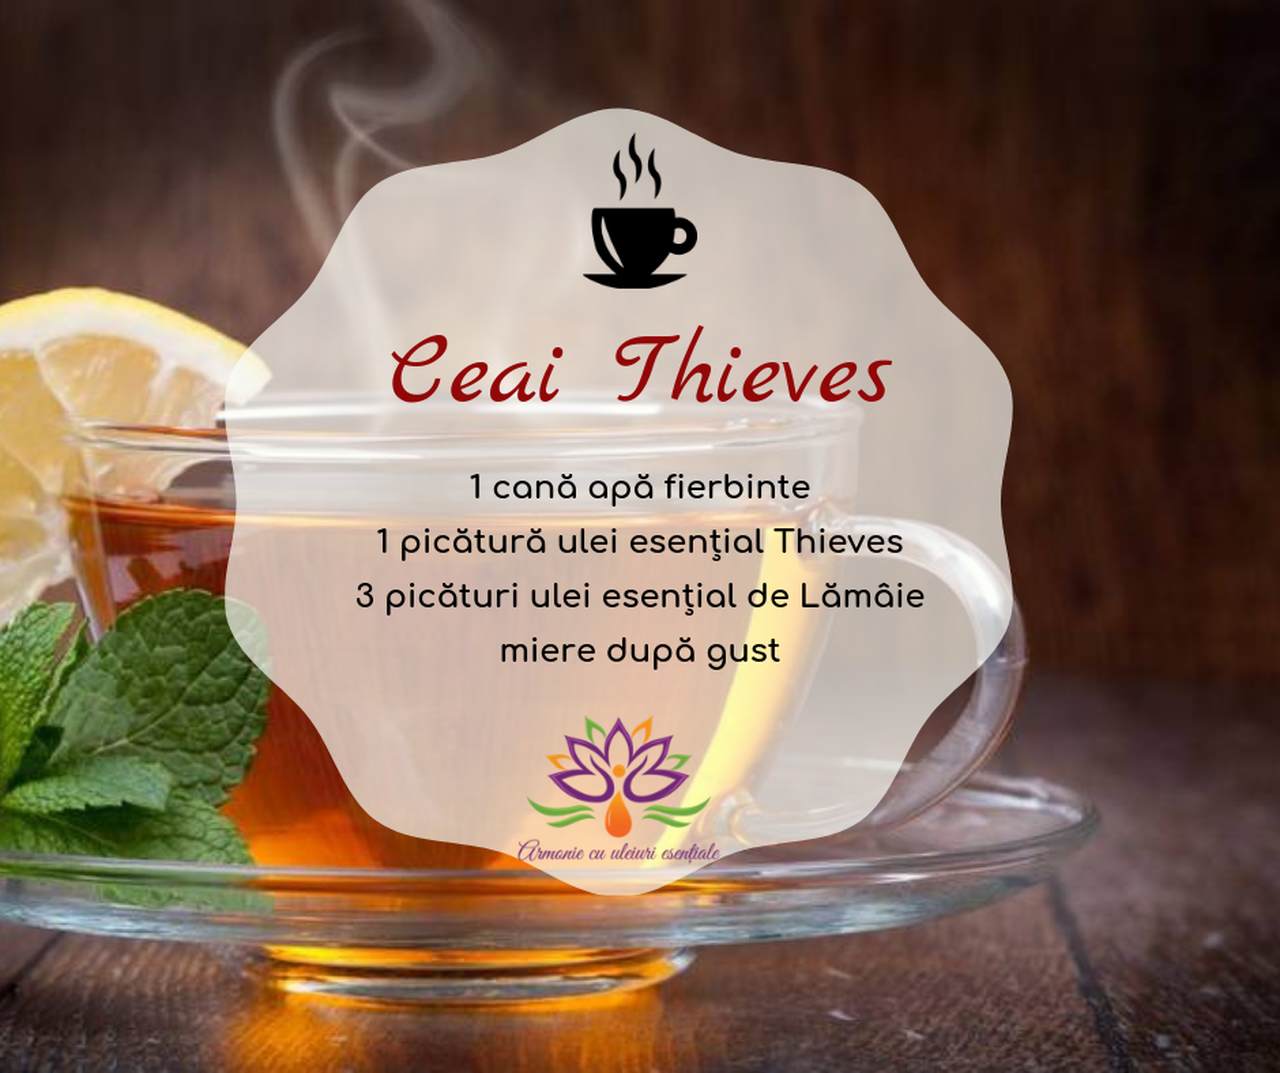 Ceai Thieves